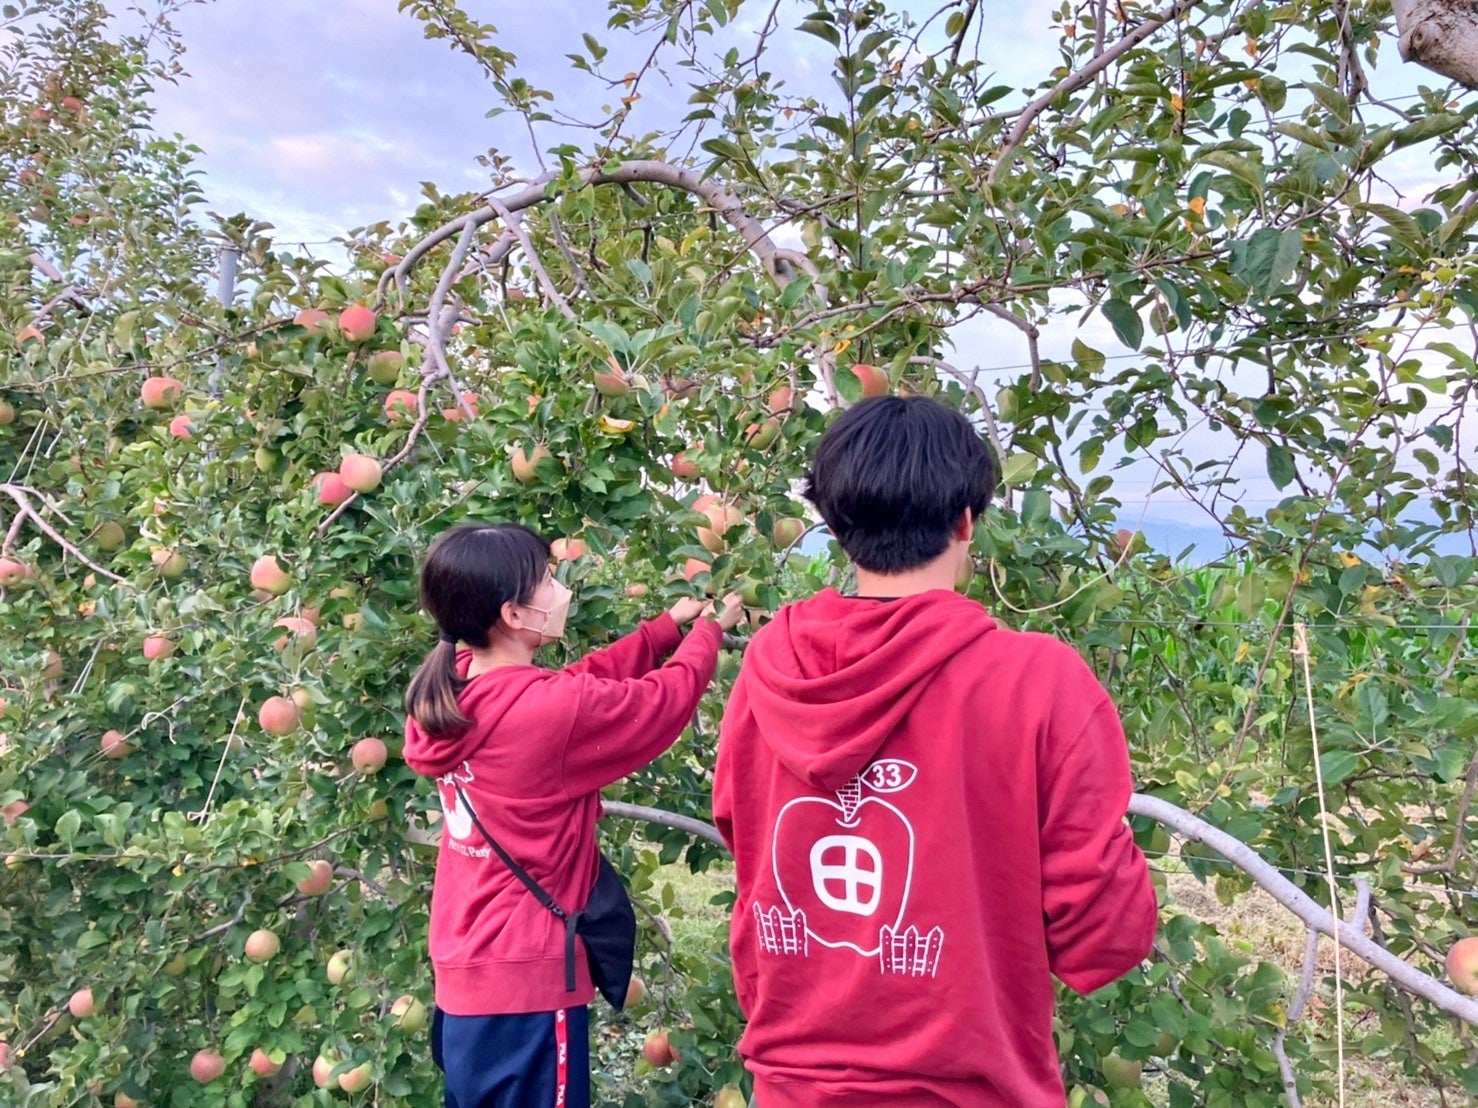 市場に出回らない農作物を有効活用。おふろcafe と学生団体「信州大学りんご部隊」の りんご風呂のサブ画像1